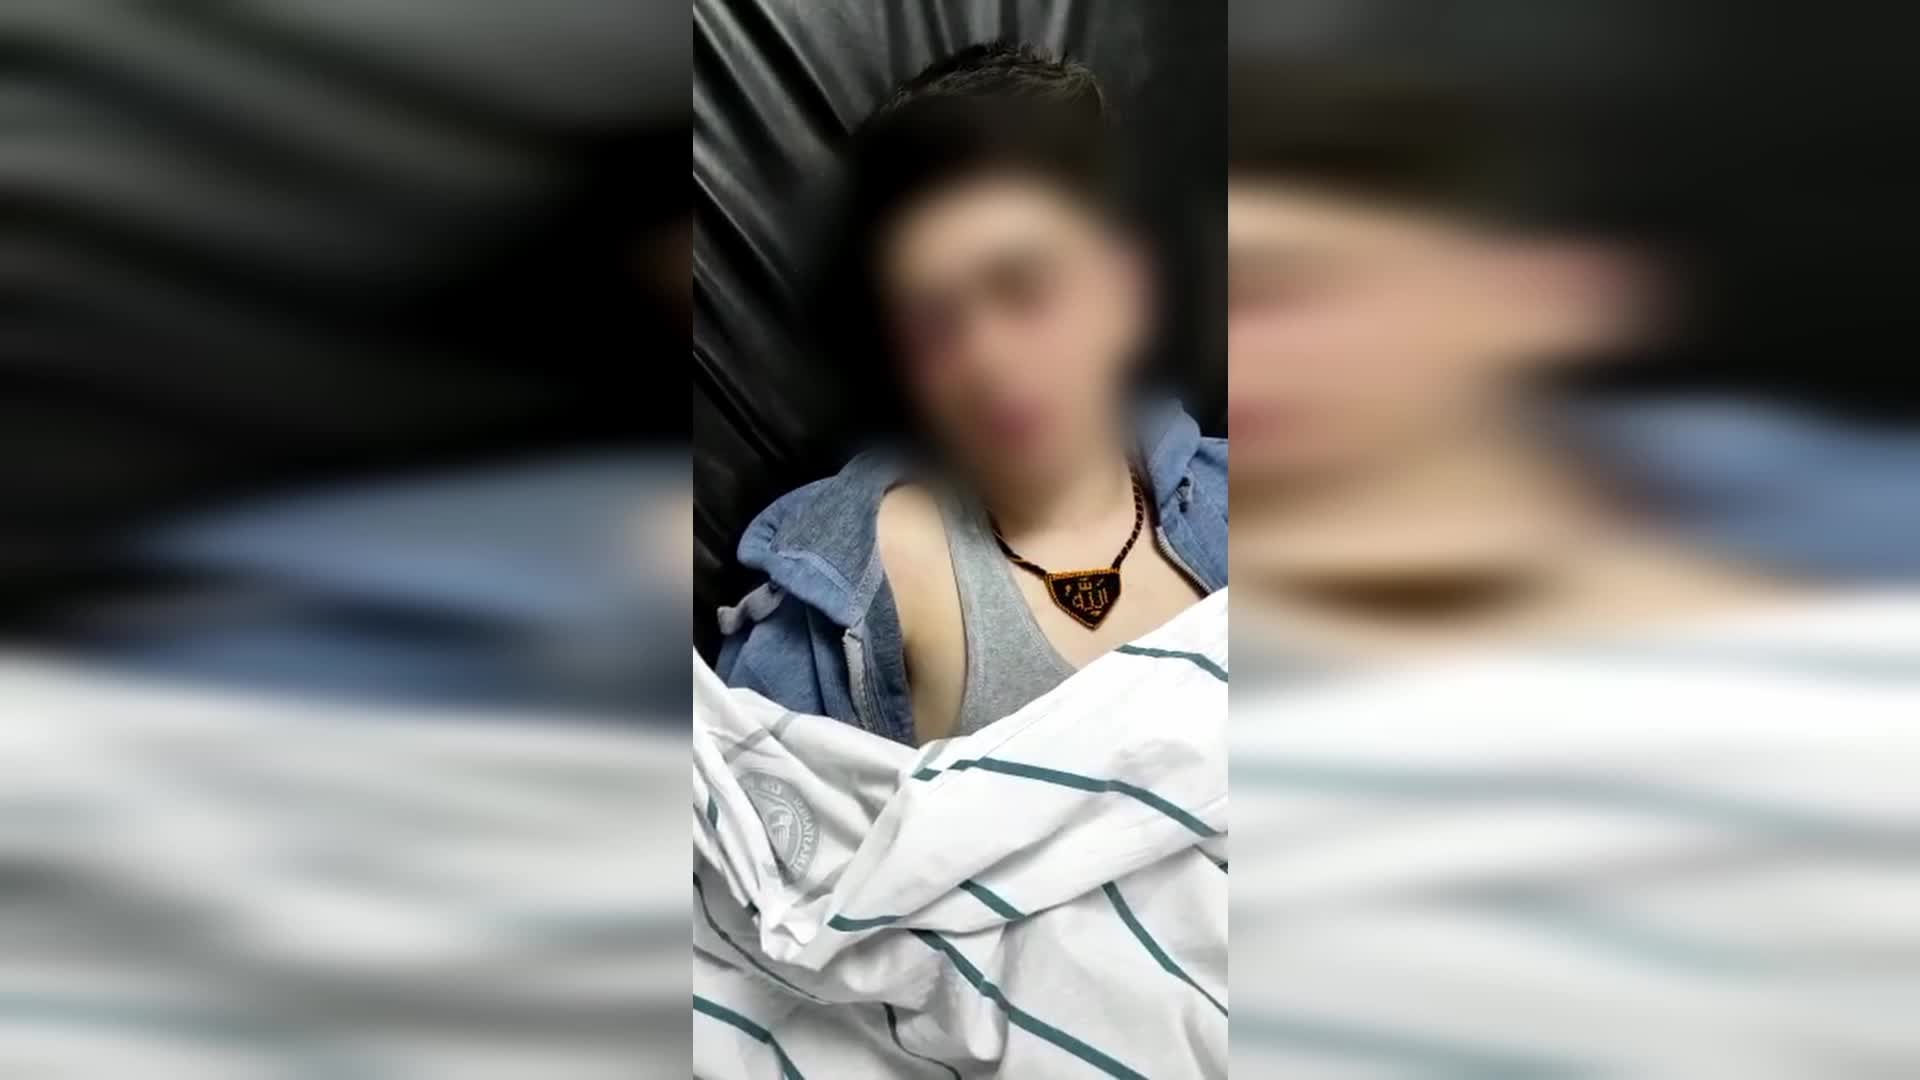 Nevruz'da polis işkencesine maruz kalan çocuğun ifadesi ortaya çıktı: 'Ellerimi bağlayıp dipçikle vurdular... Çukura attılar...'